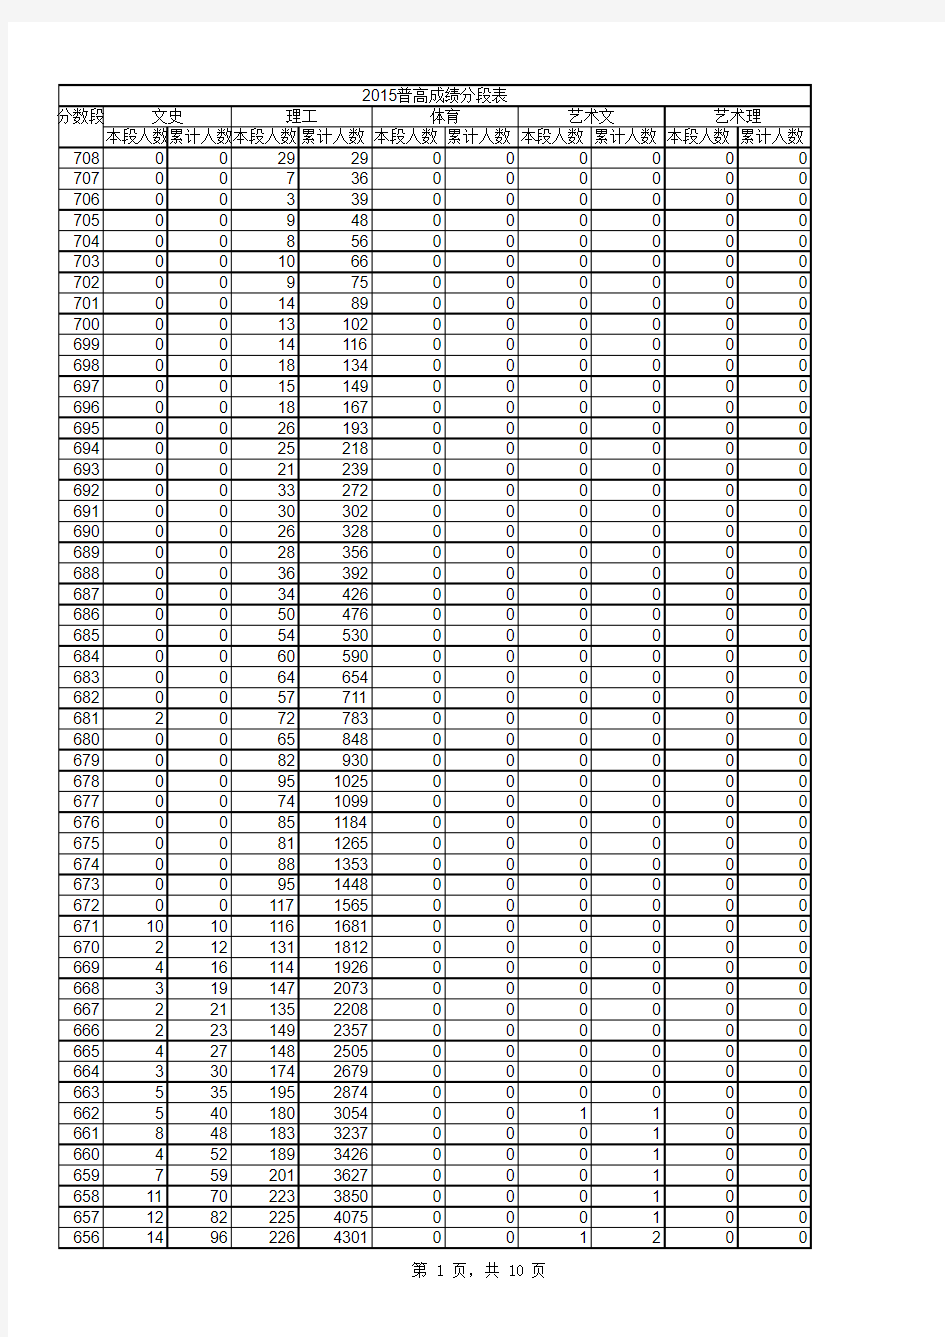 2003-2015年山东省普通高考成绩分段表电子表格版